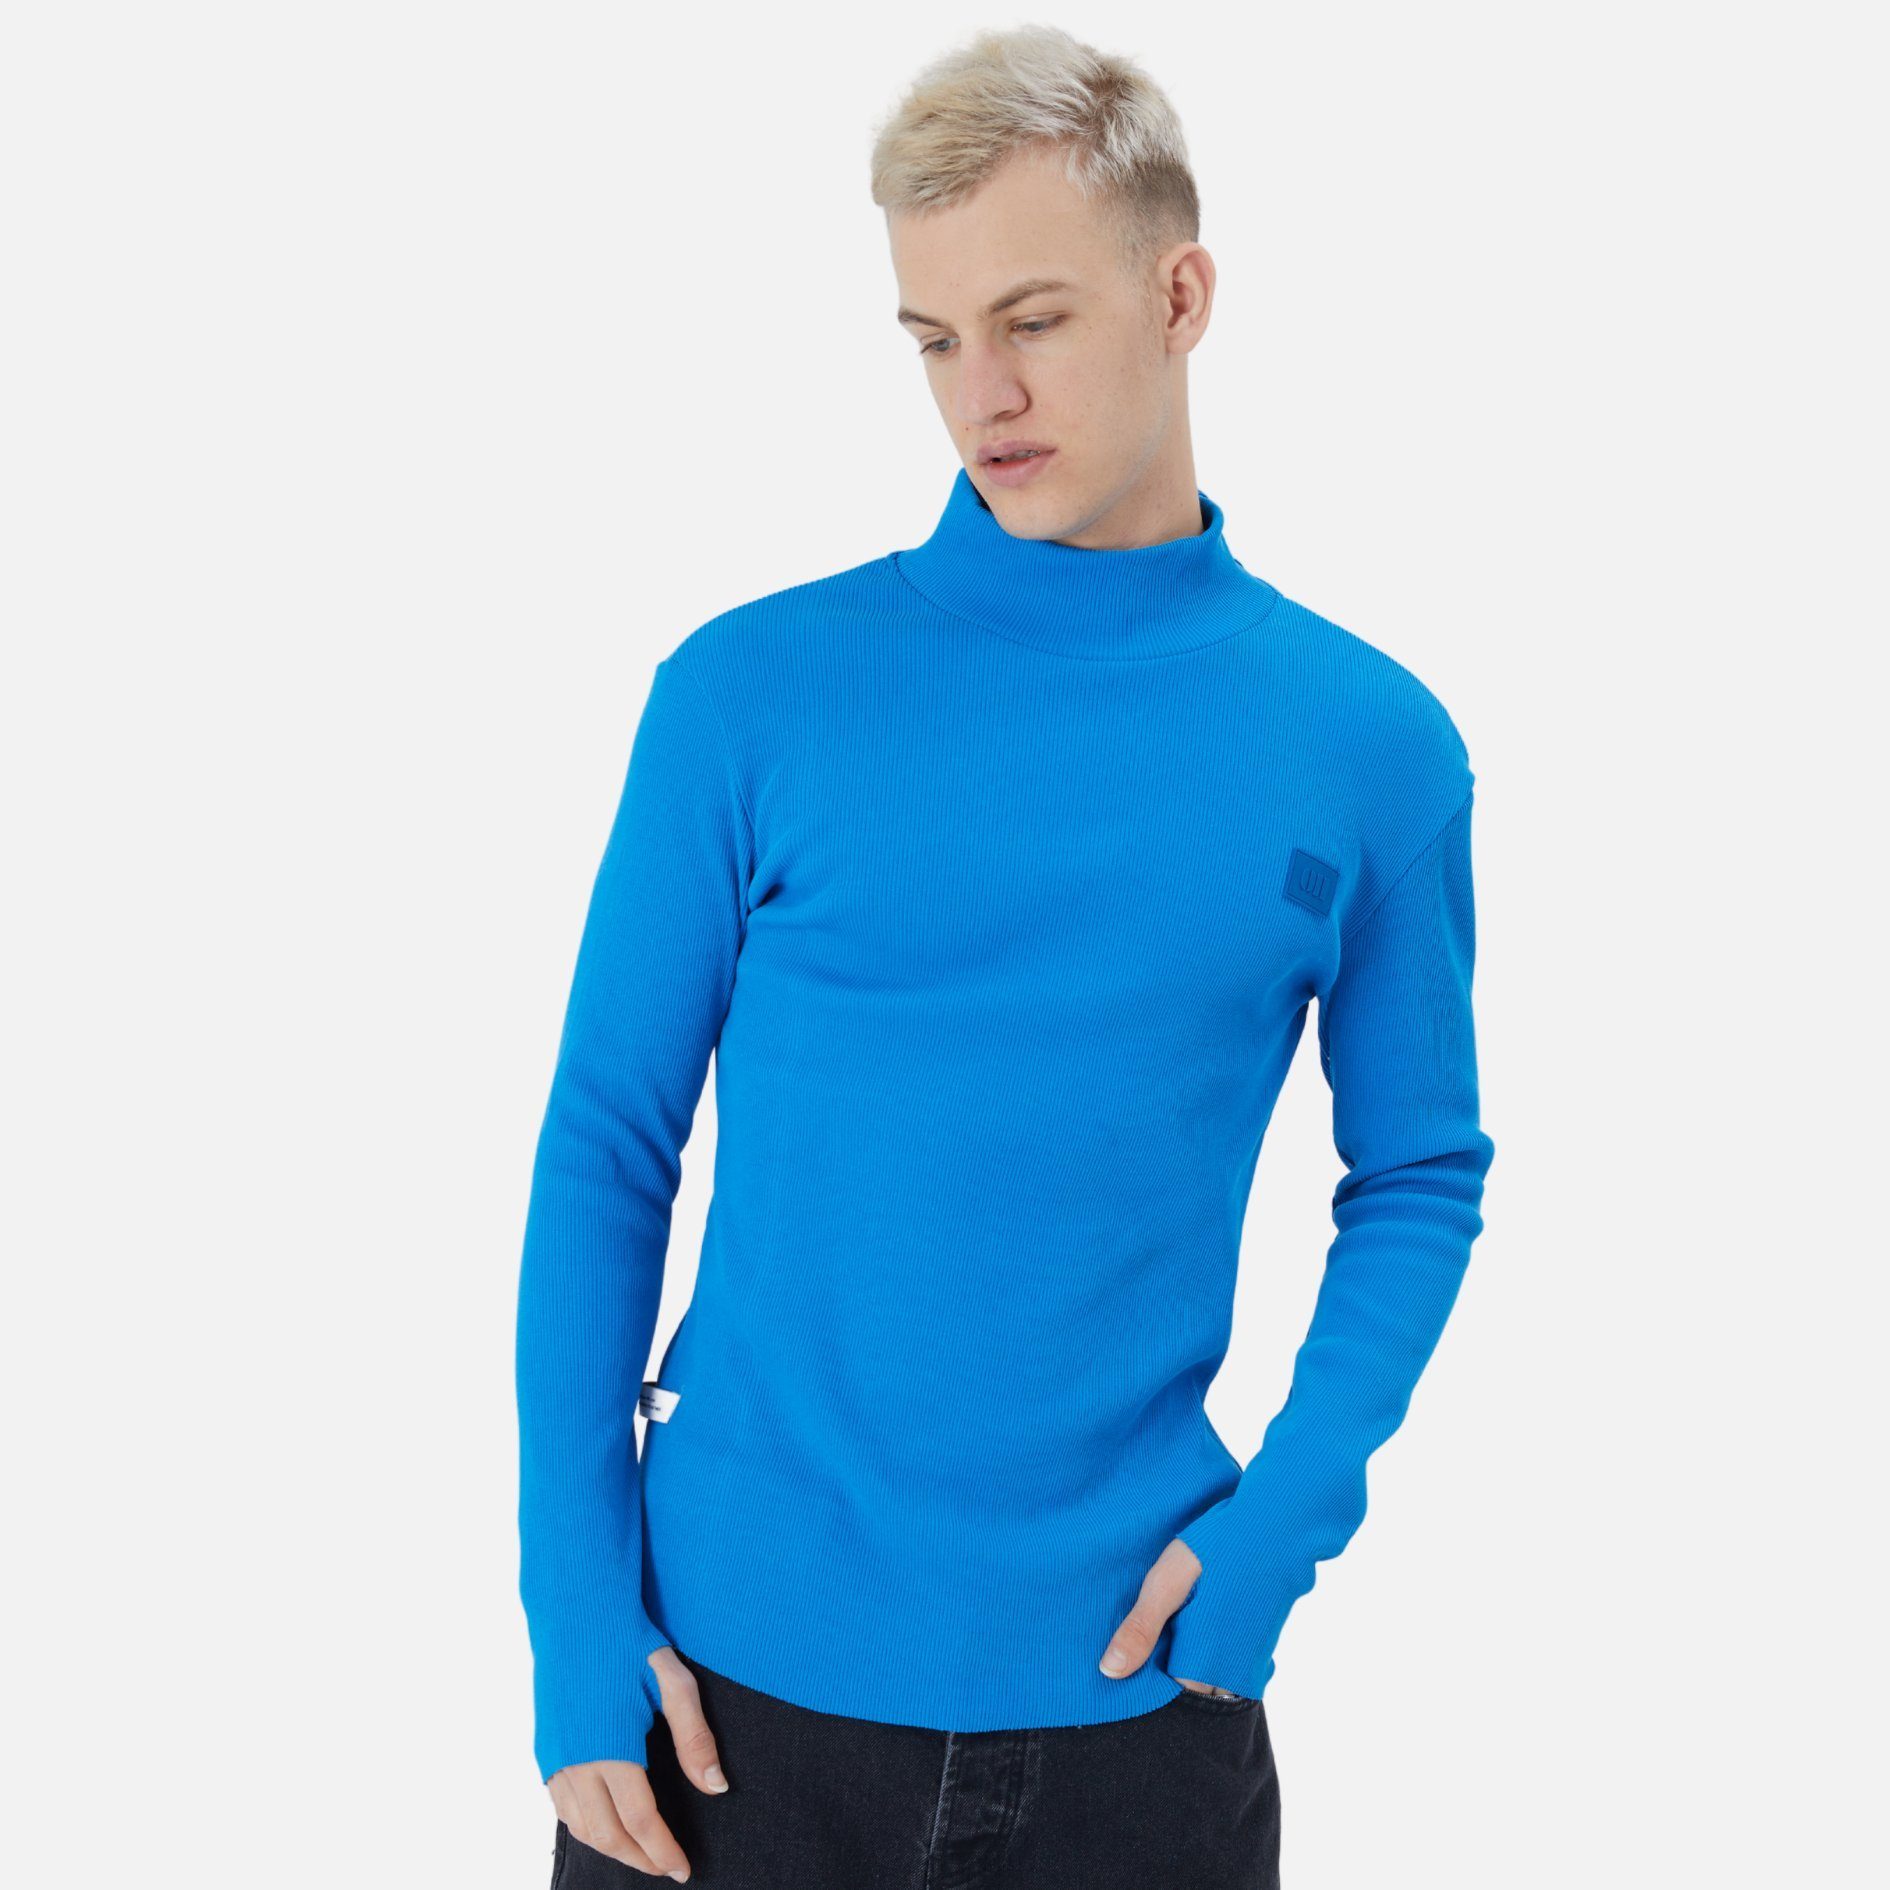 COFI Casuals Sweatshirt Herren Blau Regular Pullover Sweatshirt Rundhals Fit